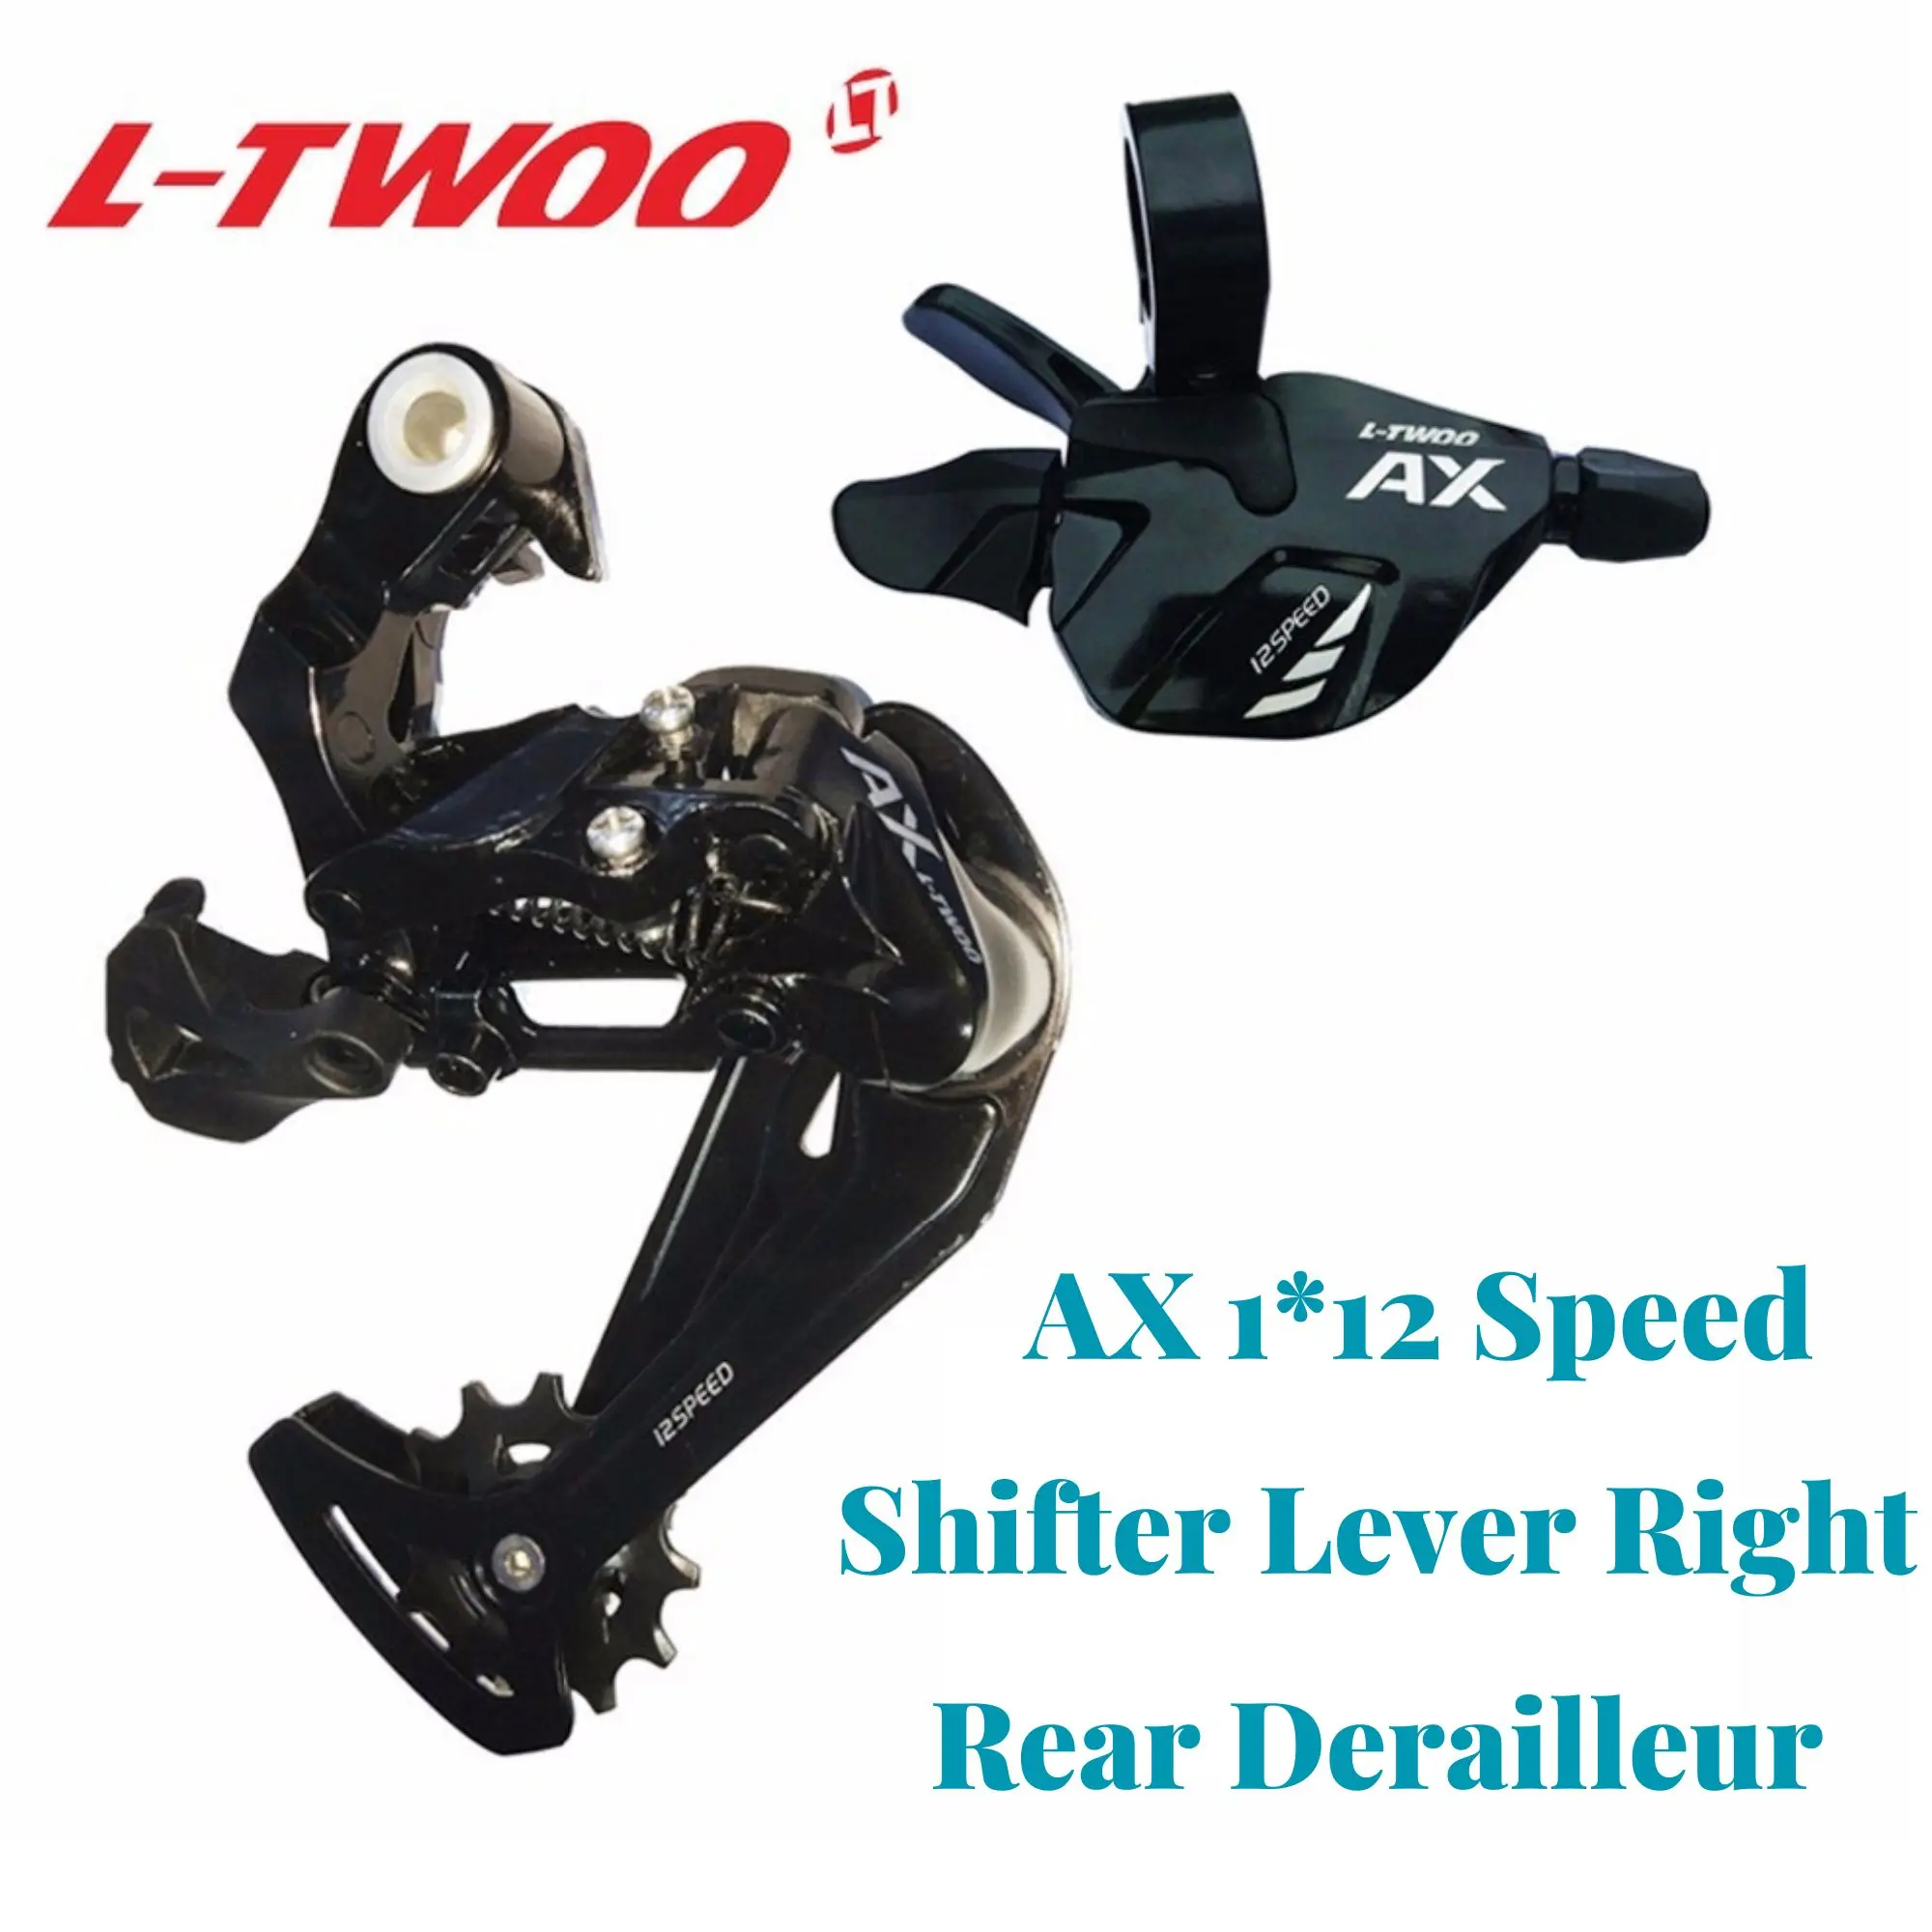 

Велосипед LTWOO AX 1X1, Задний рычаг переключателя передач, 2 скорости, длинная клетка, подходит для горных велосипедов, кассета 12 S 52T M9100